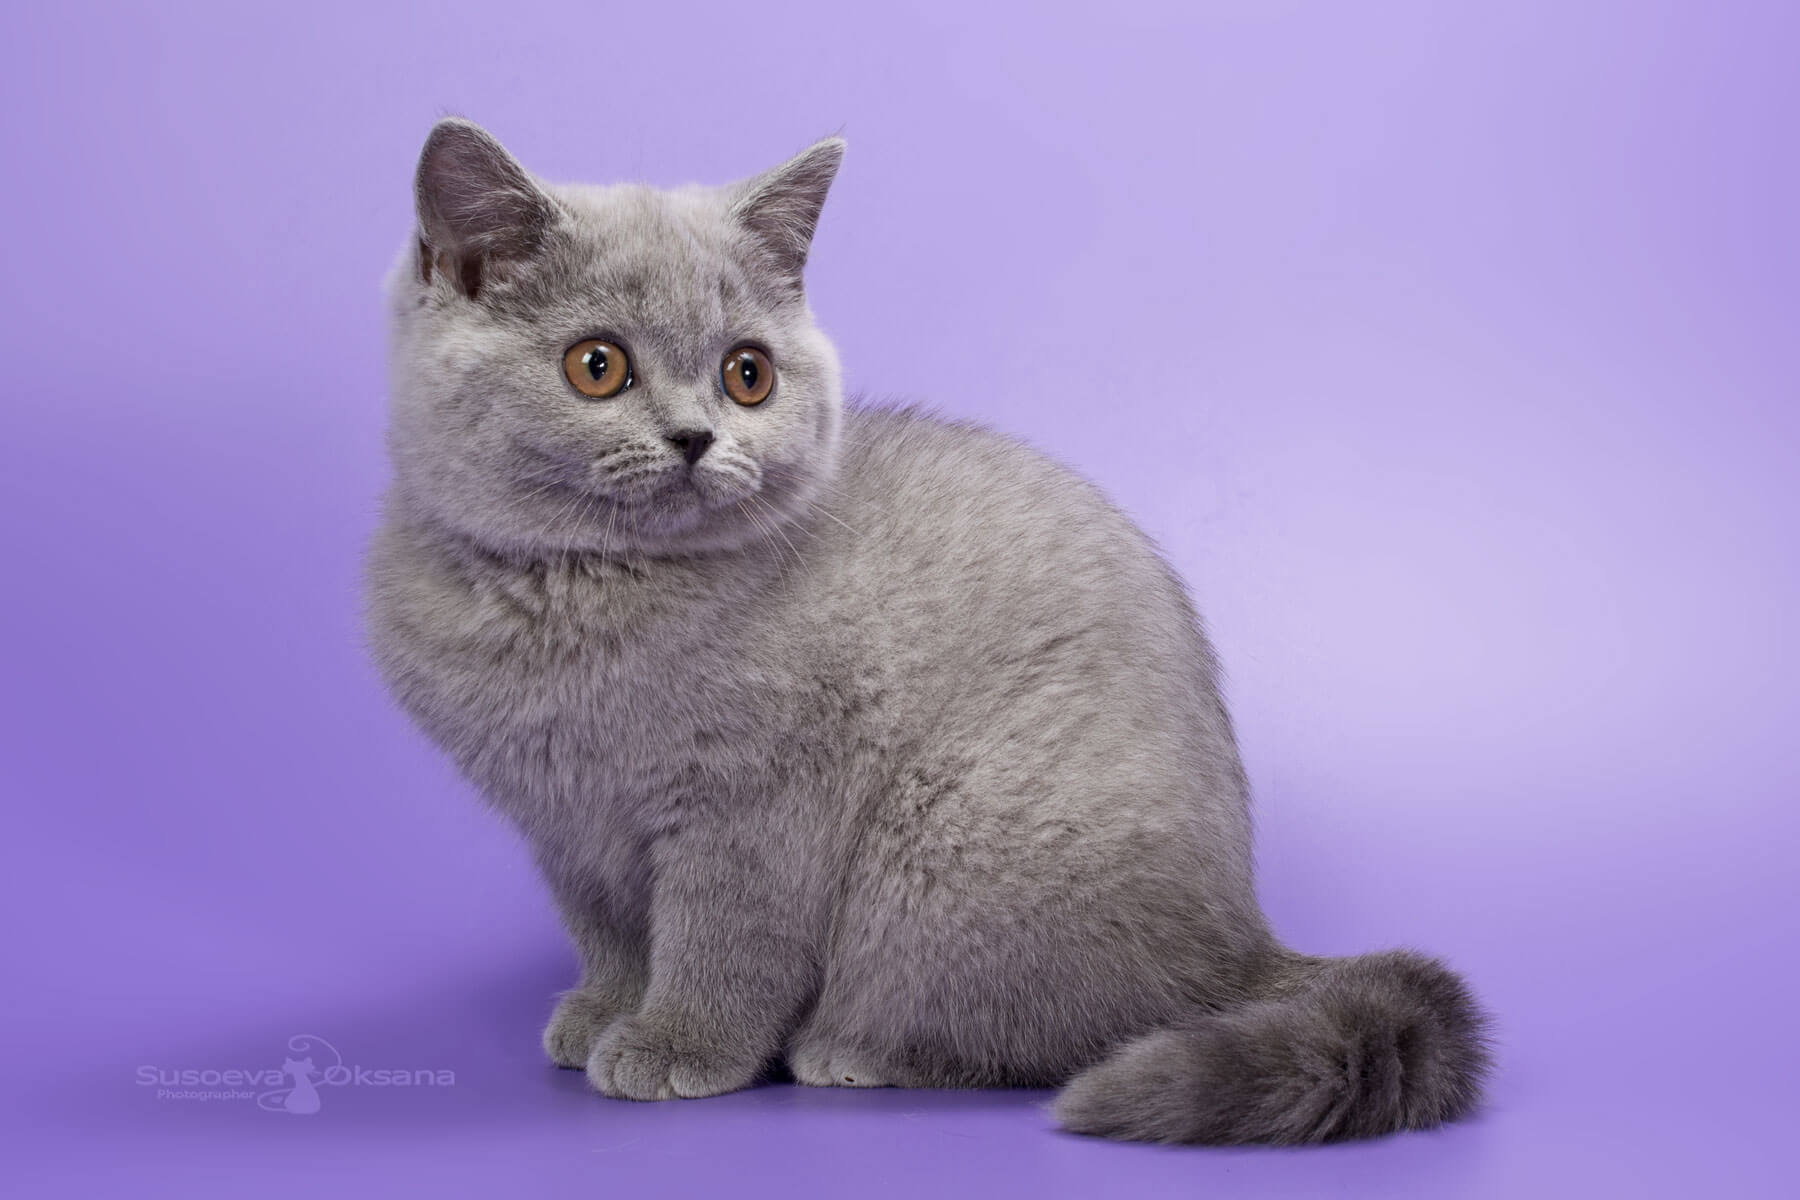 Британская голубая кошка, фото, цена, купить в Минске голубого британского котёнка-кошку Iris